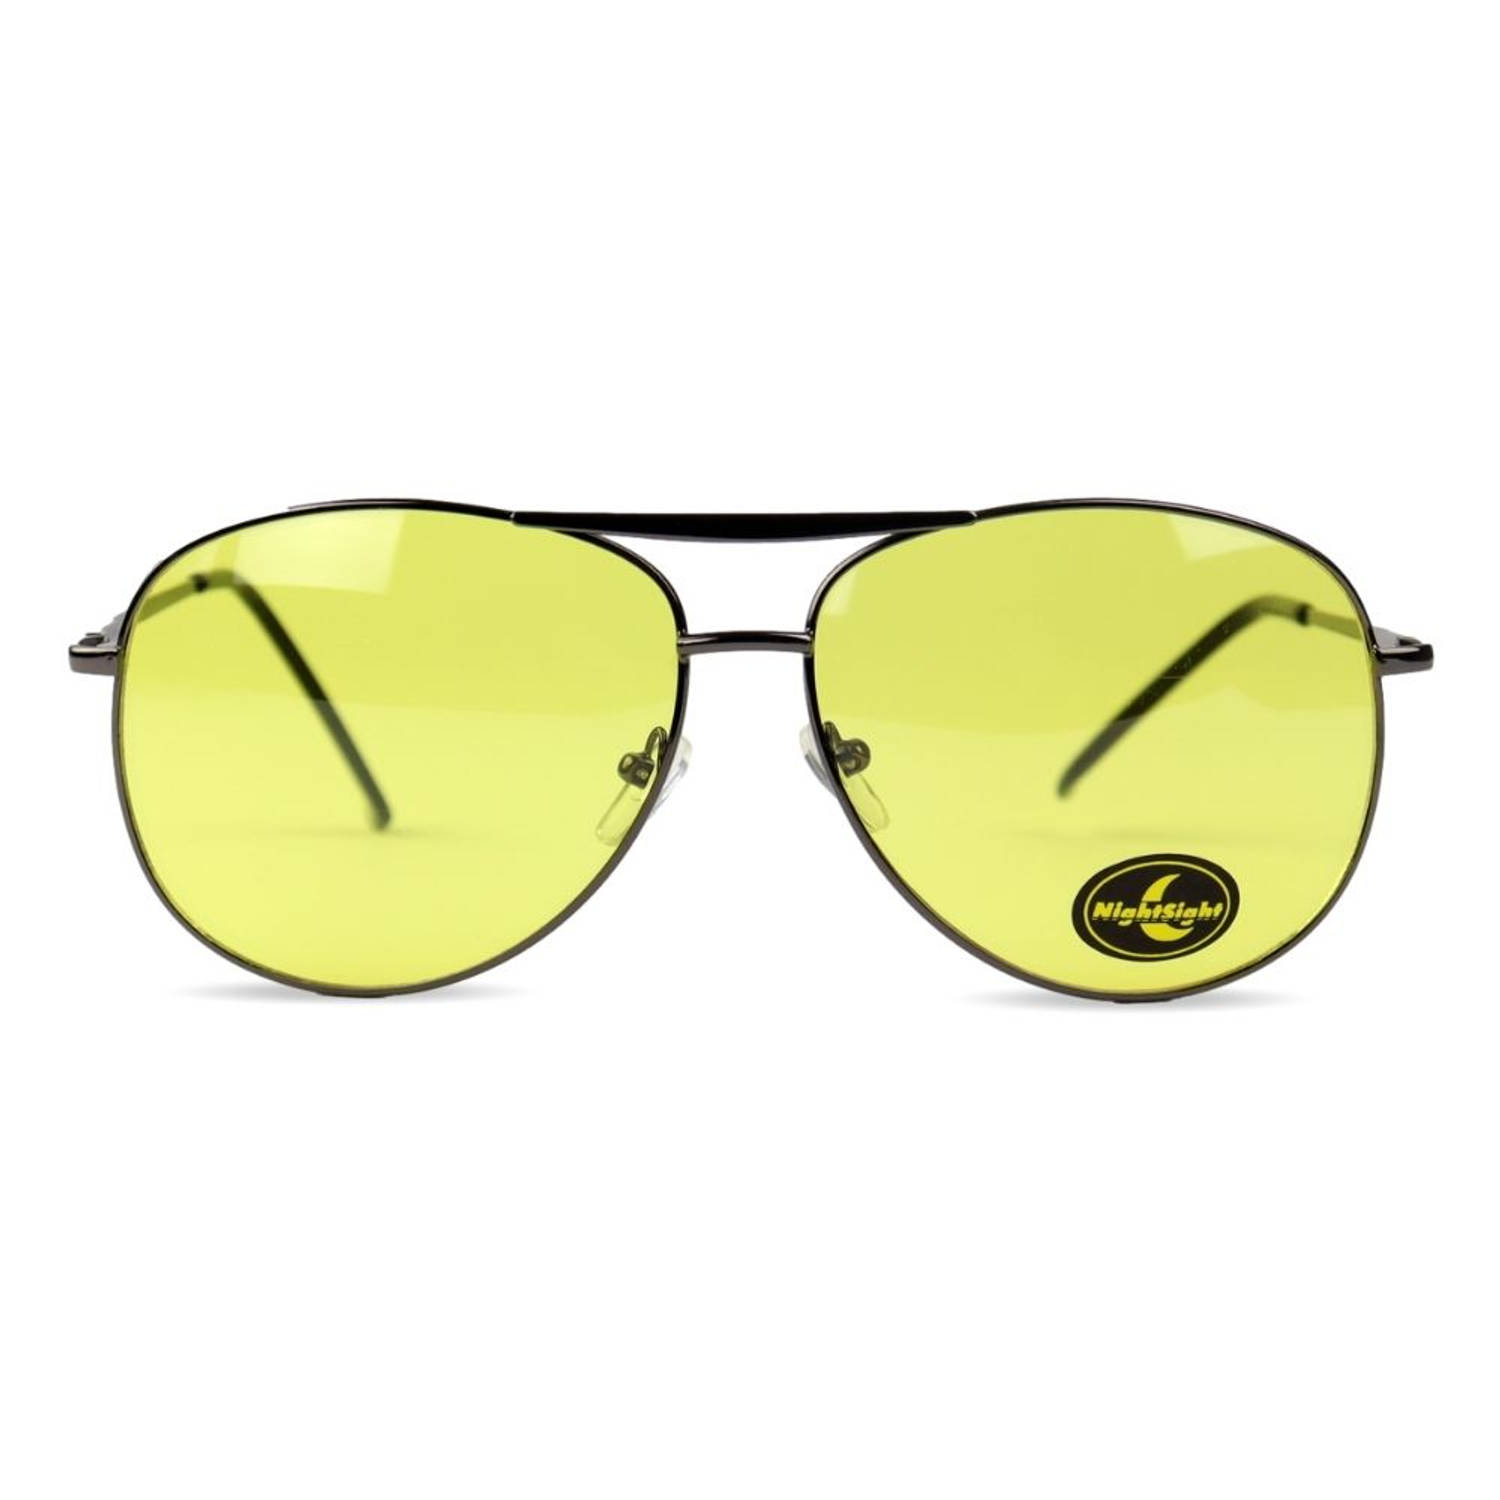 Orange85 Nachtbril Auto - Dames - Heren - Pilotenbril - Gele glazen - Zwart frame - Auto bril